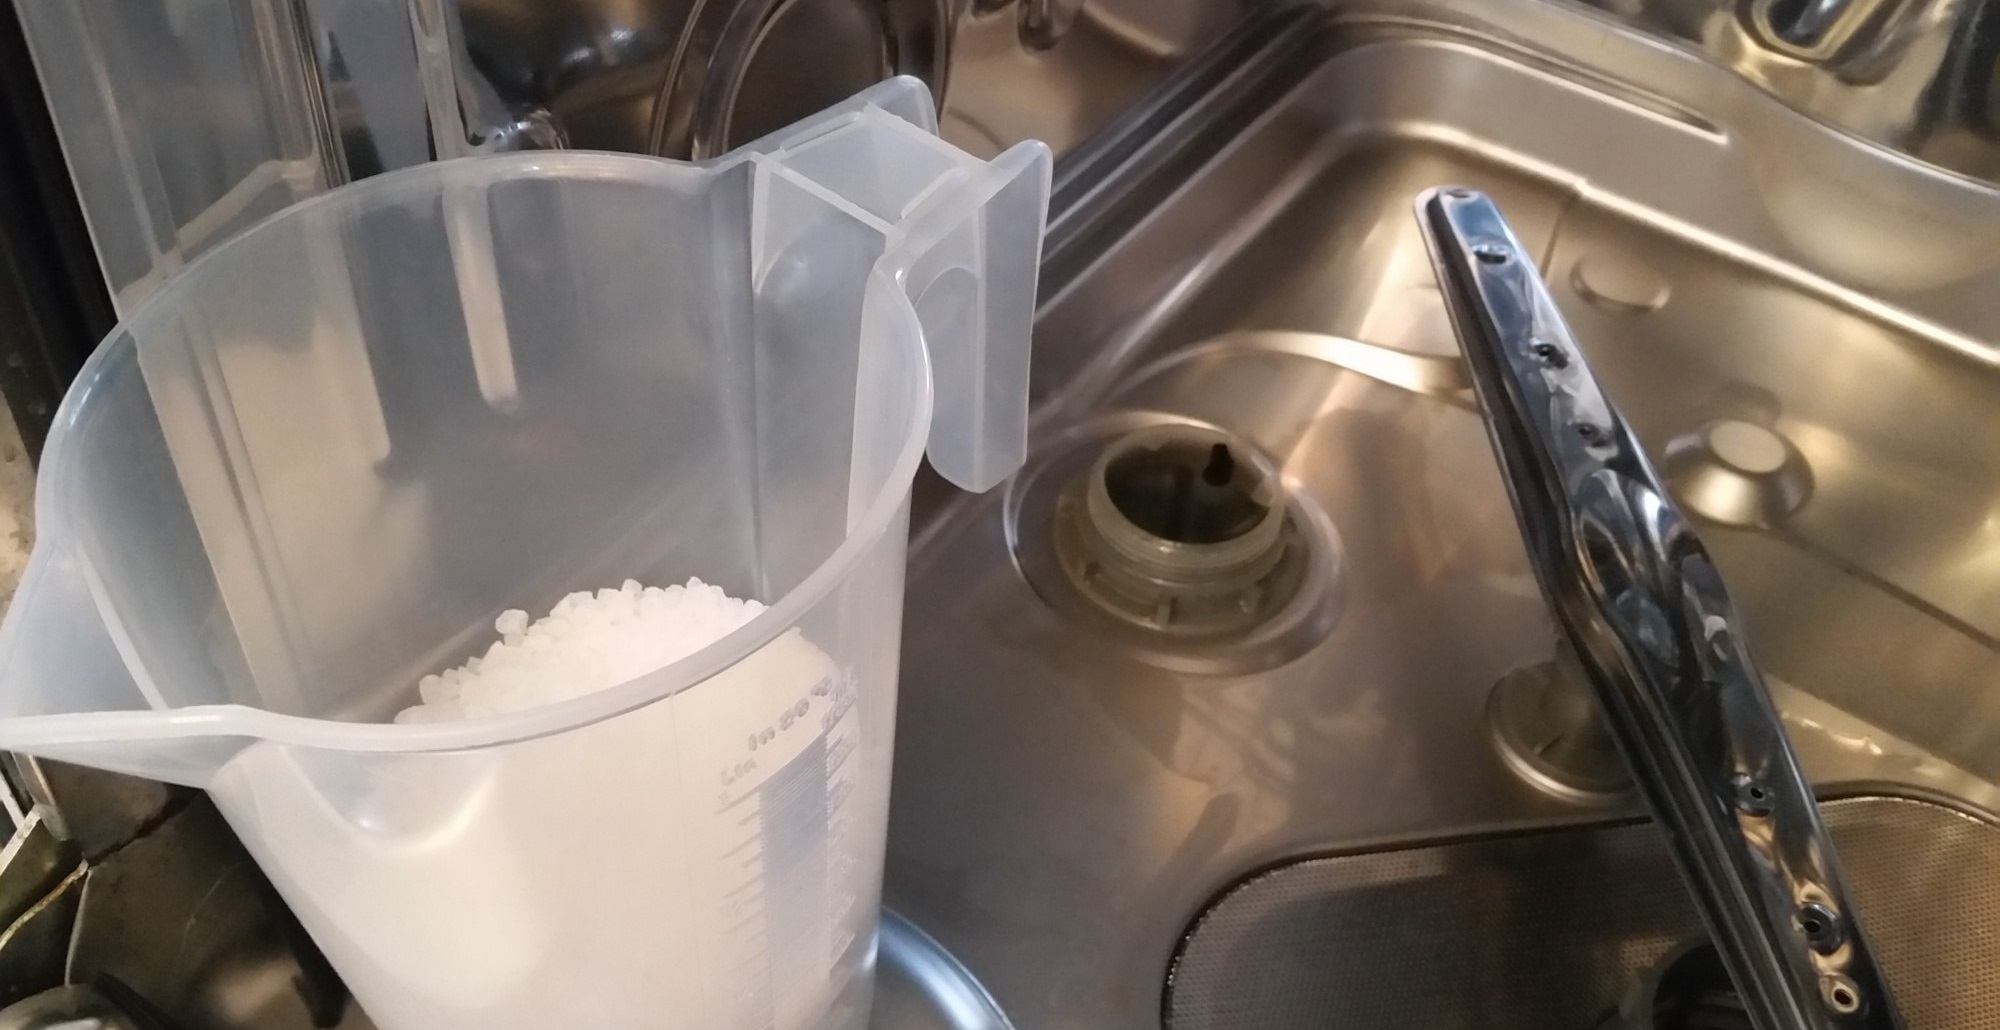 куда сыпать соль в посудомоечной машине